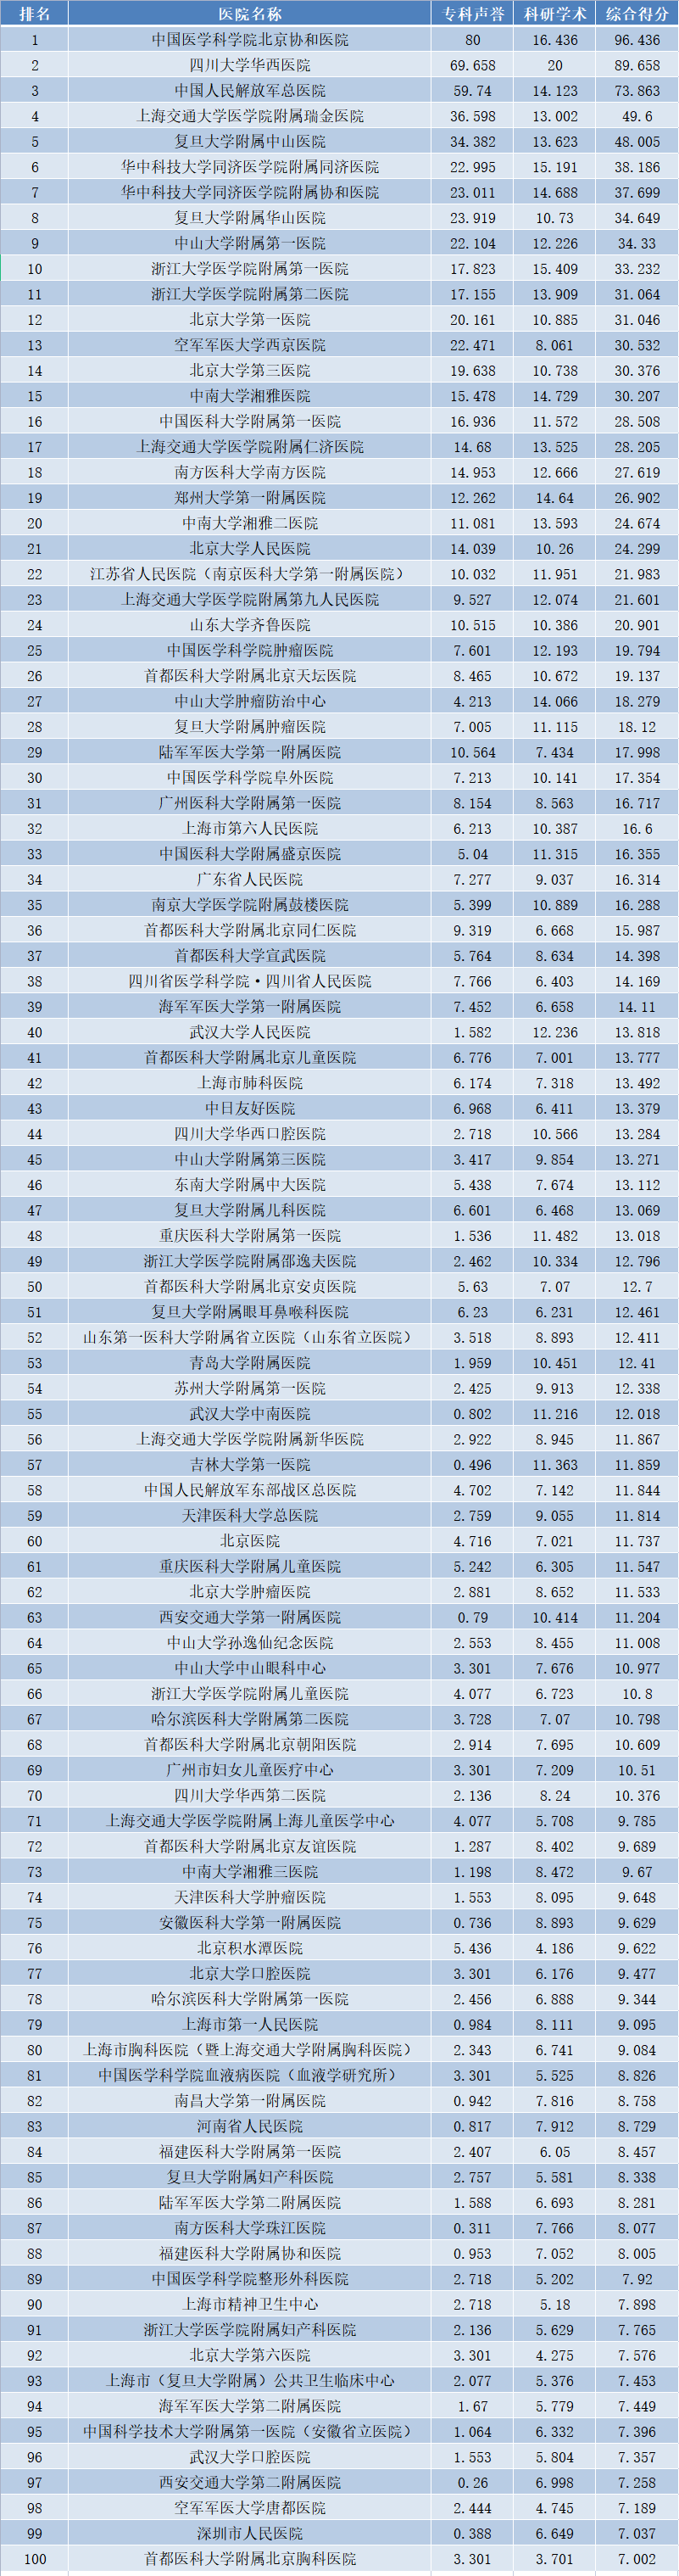 复旦版<font color="red">中国</font>医院<font color="red">排行榜</font>发布，附综合排名前100，以及40个专科排名